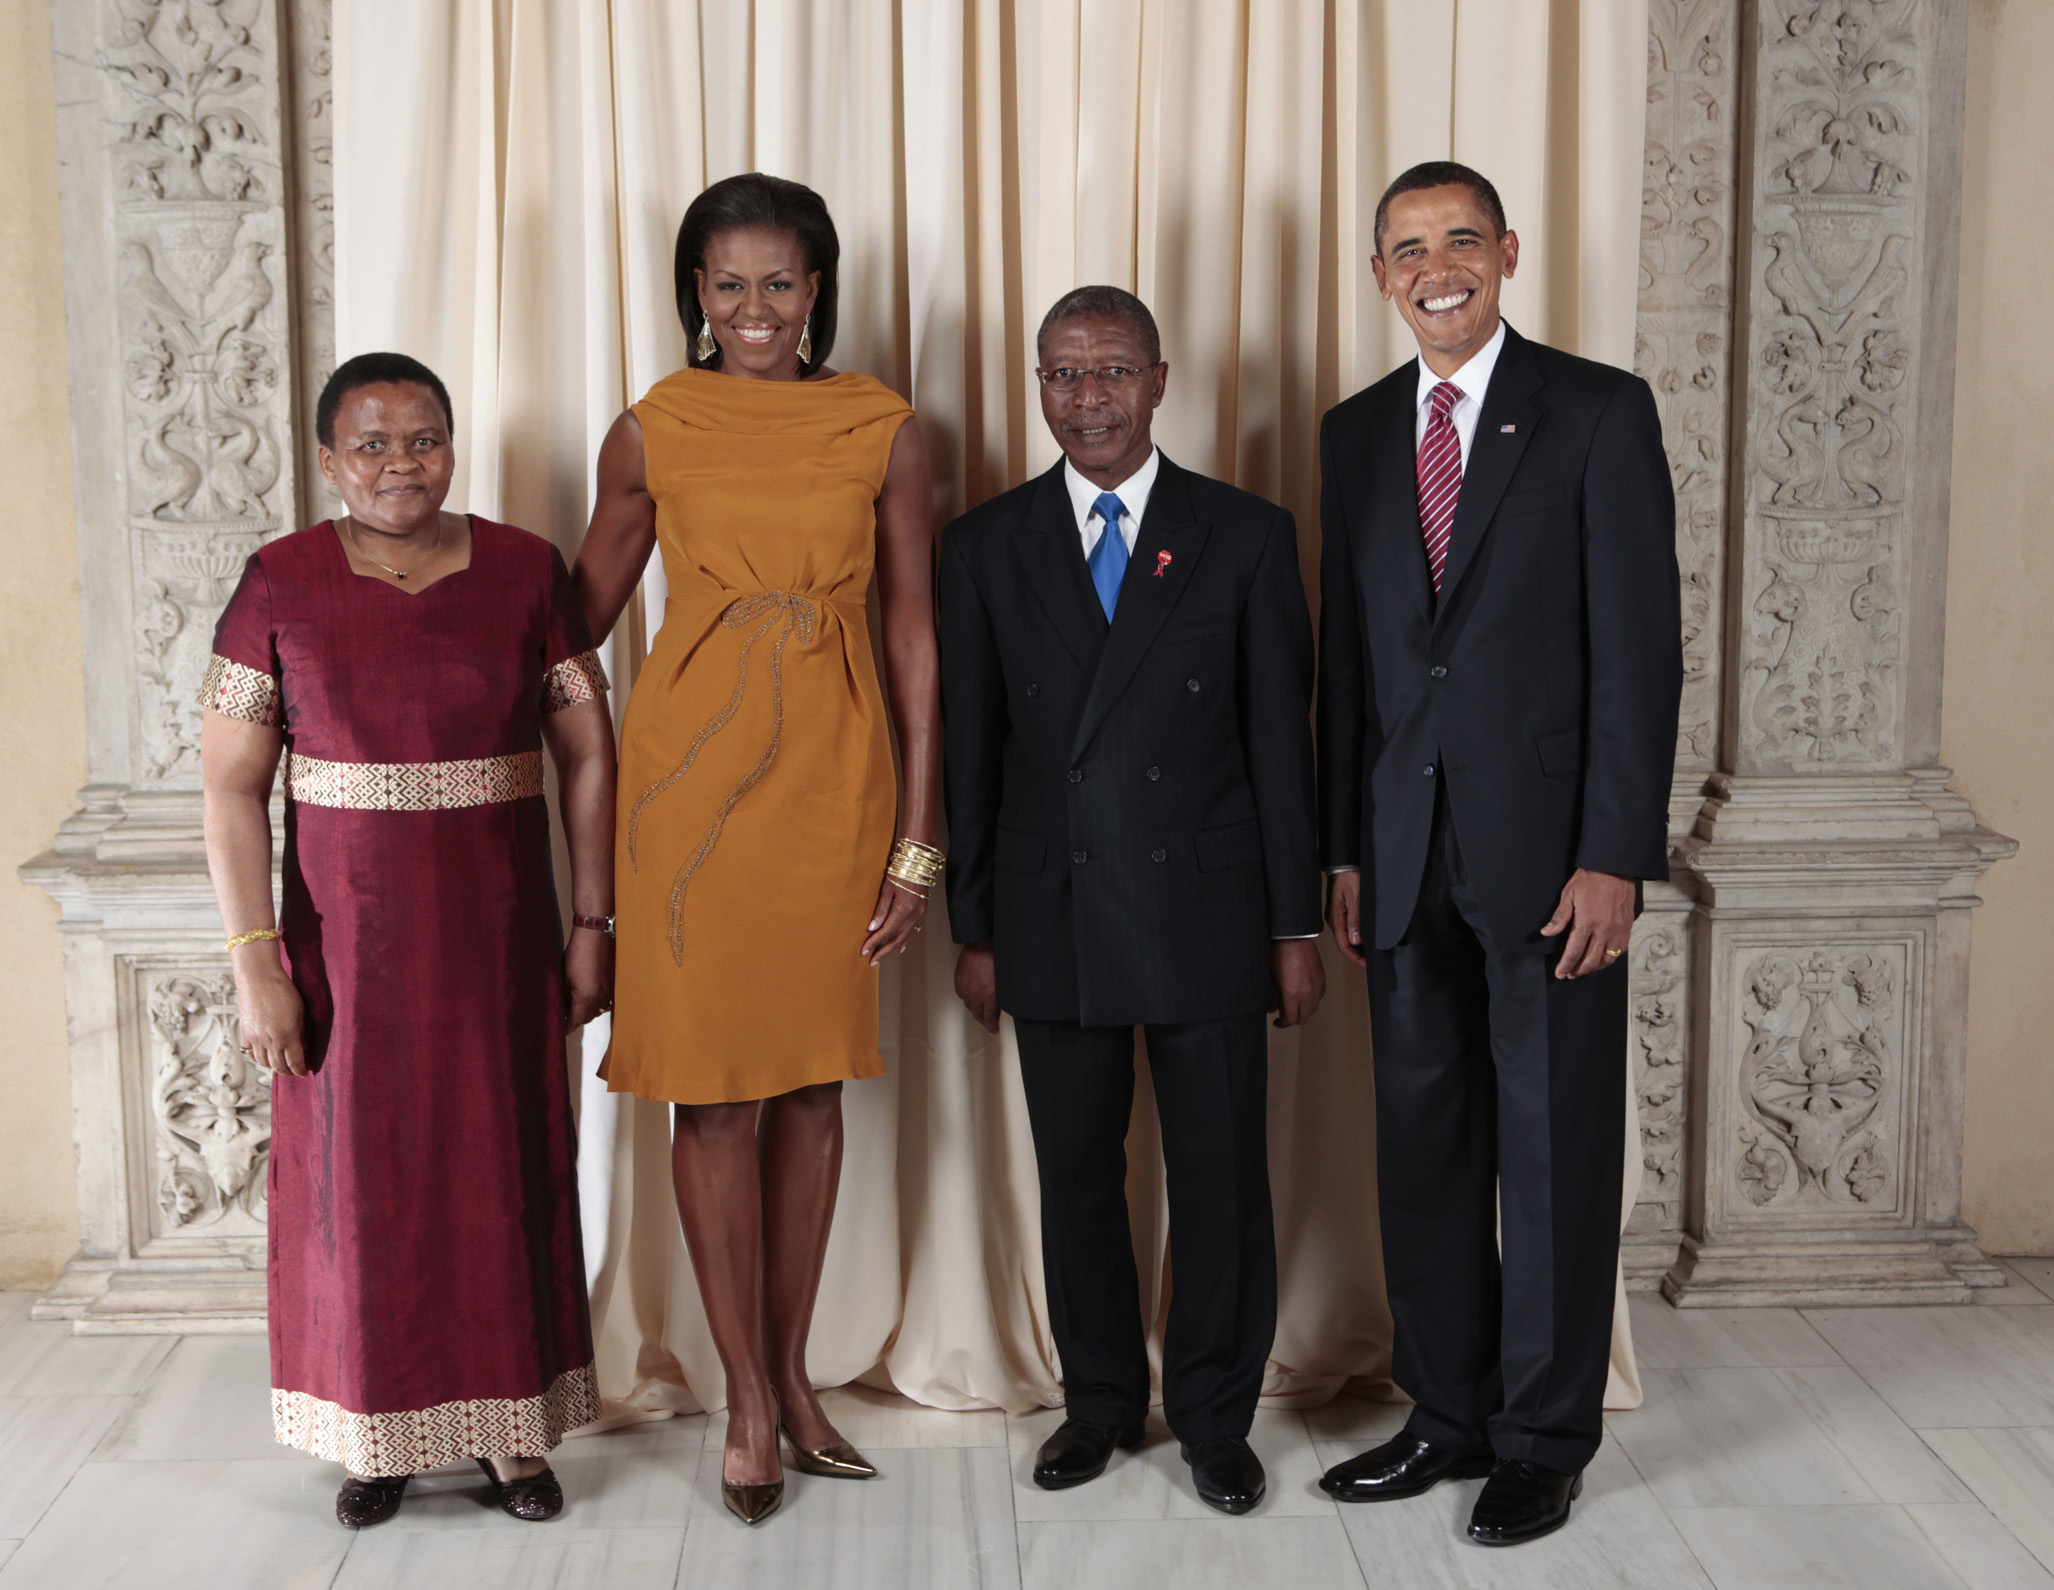 Premierminister Pakalitha Mosisili und seine Frau Mathato Mosisili zu Besuch in den Vereinigten Staaten (2009). / Bild: gemeinfrei, Offizielles Foto des Weißen Hauses von Lawrence Jackson